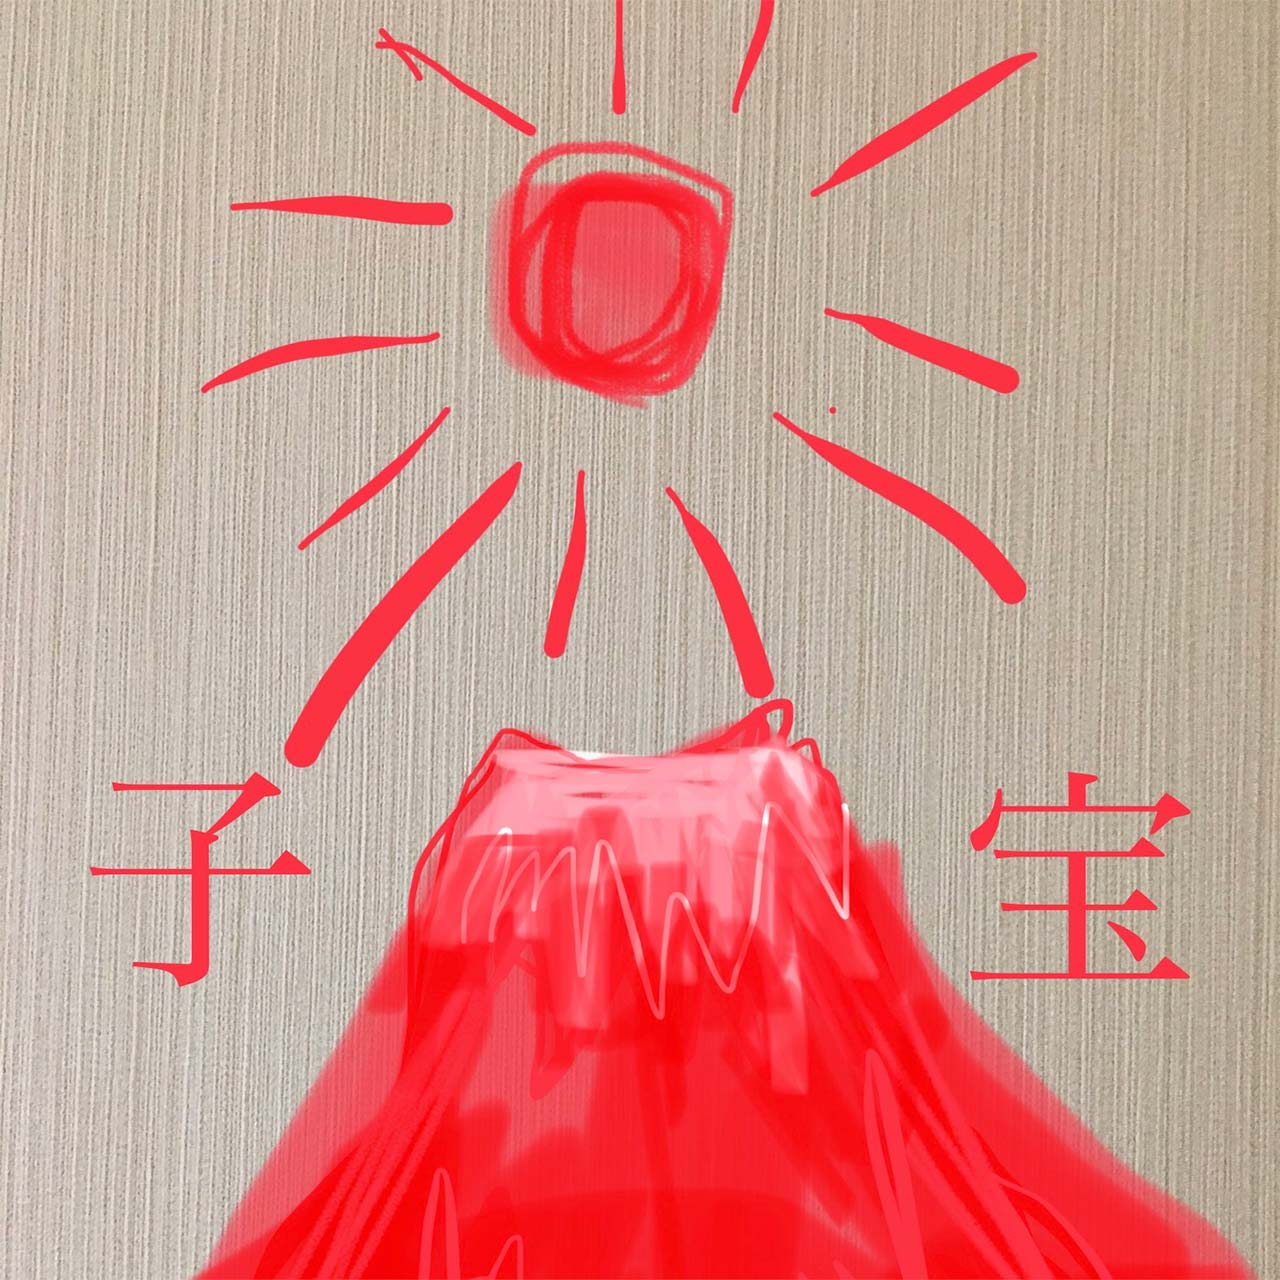 こちらは携帯のマークアップ機能を使って僕が描いた赤富士 